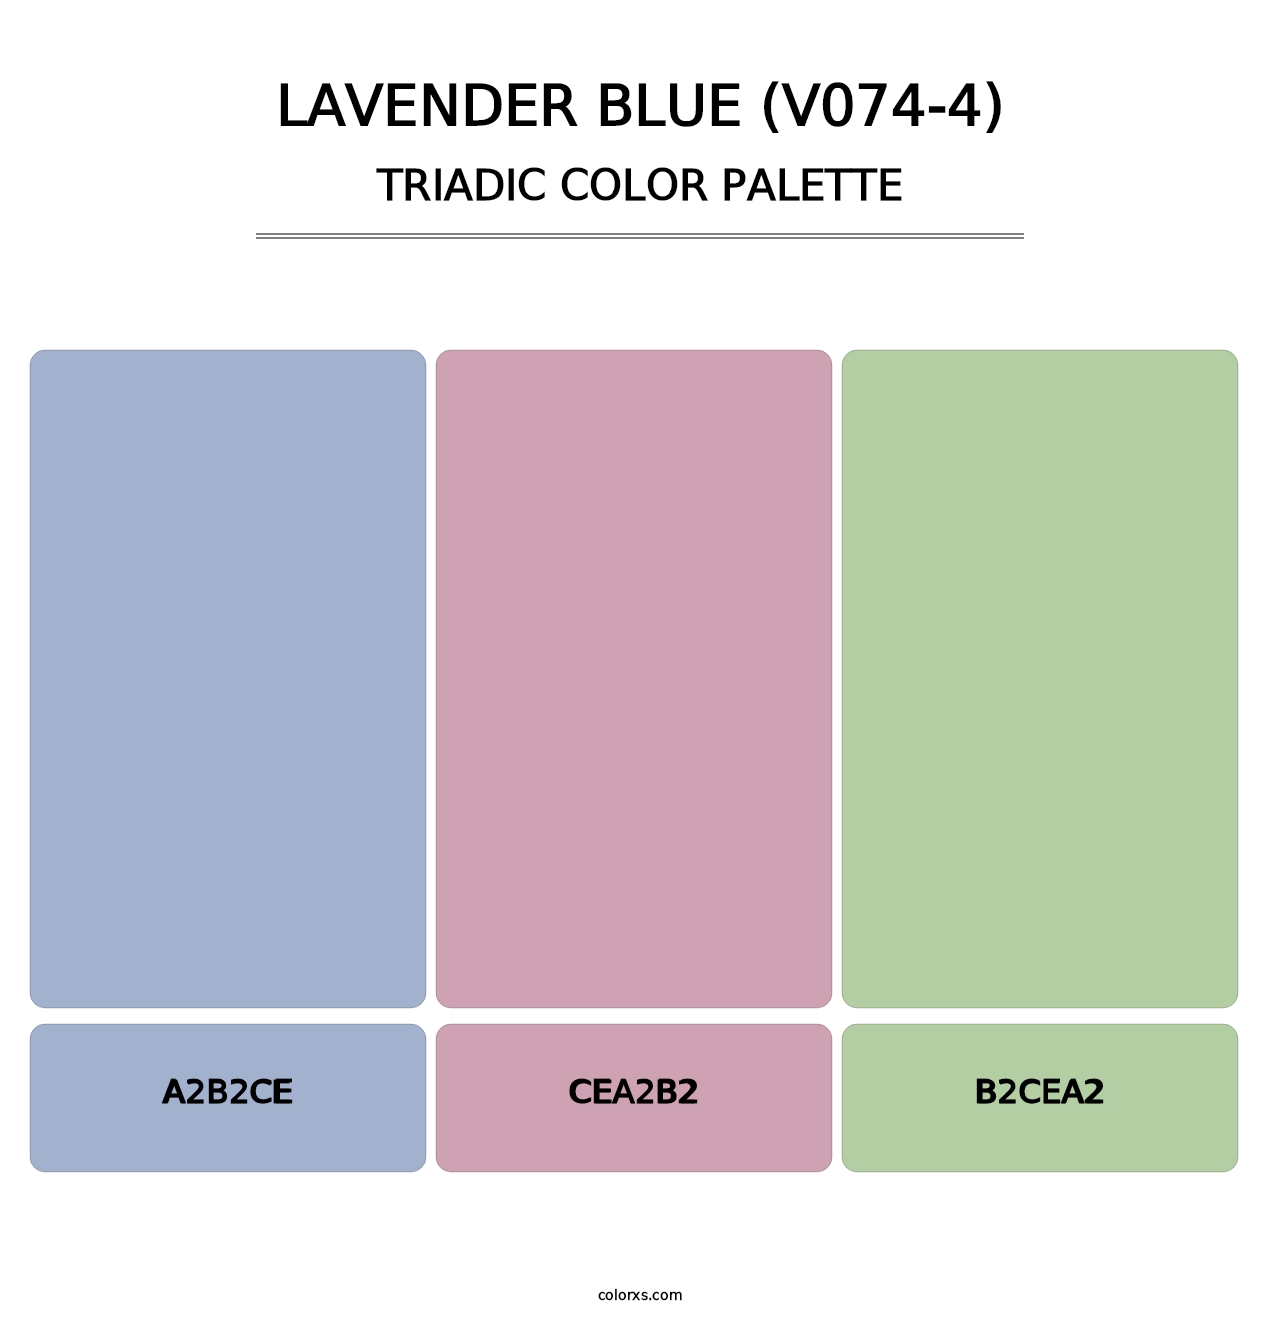 Lavender Blue (V074-4) - Triadic Color Palette